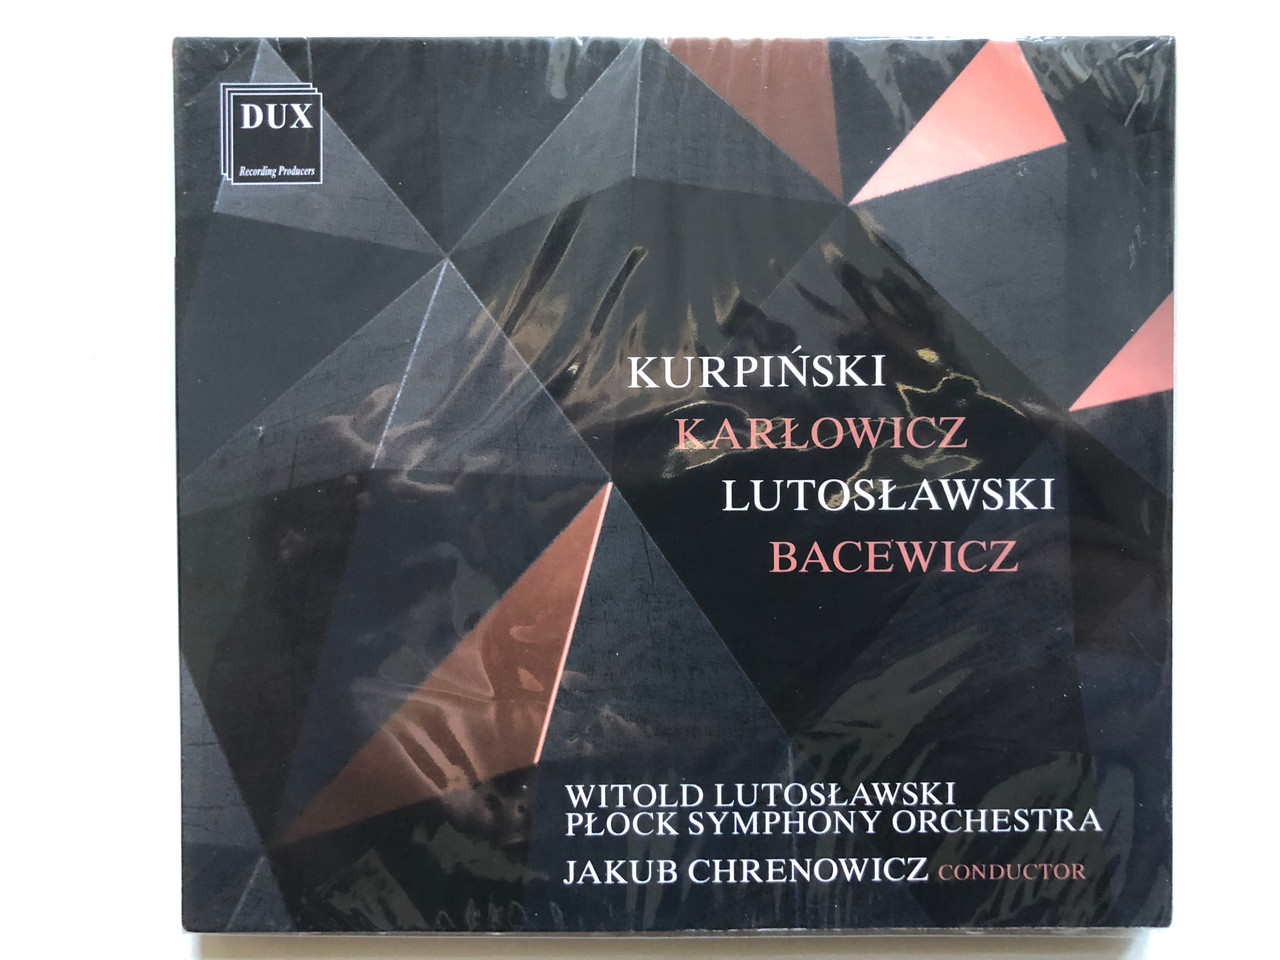 https://cdn10.bigcommerce.com/s-62bdpkt7pb/products/0/images/255020/Kurpinski_Karlowicz_Lutoslawski_Bacewicz_Witold_Lutoslawski_Plock_Symphony_Orchestra_Jakub_Chrenowicz_conductor_DUX_Recording_Audio_CD_2021_DUX_1625_1__01854.1664443326.1280.1280.JPG?c=2&_gl=1*43h15r*_ga*MjA2NTIxMjE2MC4xNTkwNTEyNTMy*_ga_WS2VZYPC6G*MTY2NDQzNTUwNy41NzMuMS4xNjY0NDQzMDgyLjU3LjAuMA..